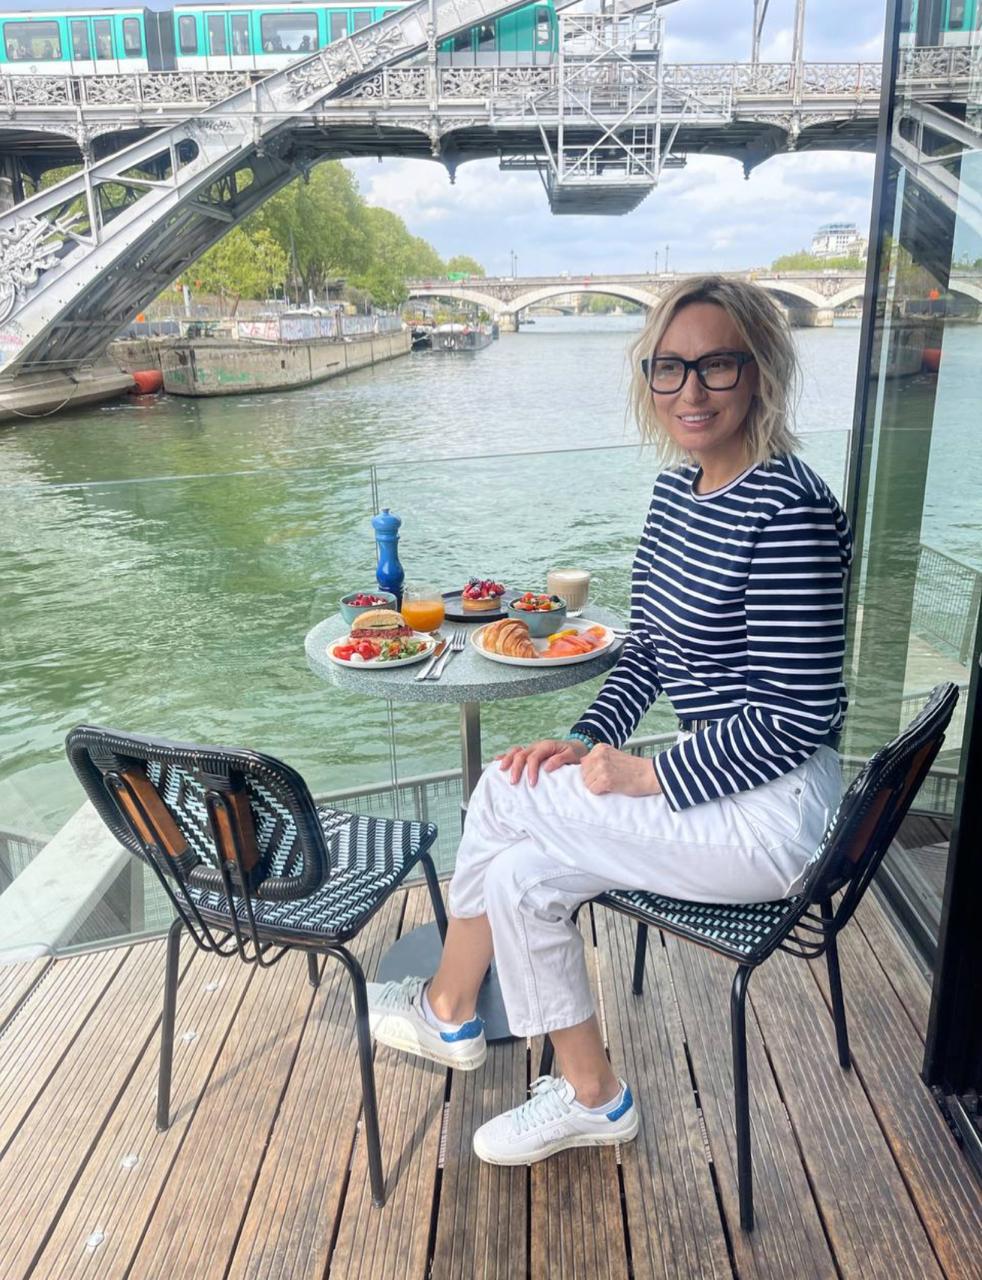 Париижское настроение: завтрак на веранде баржи на реке Сена